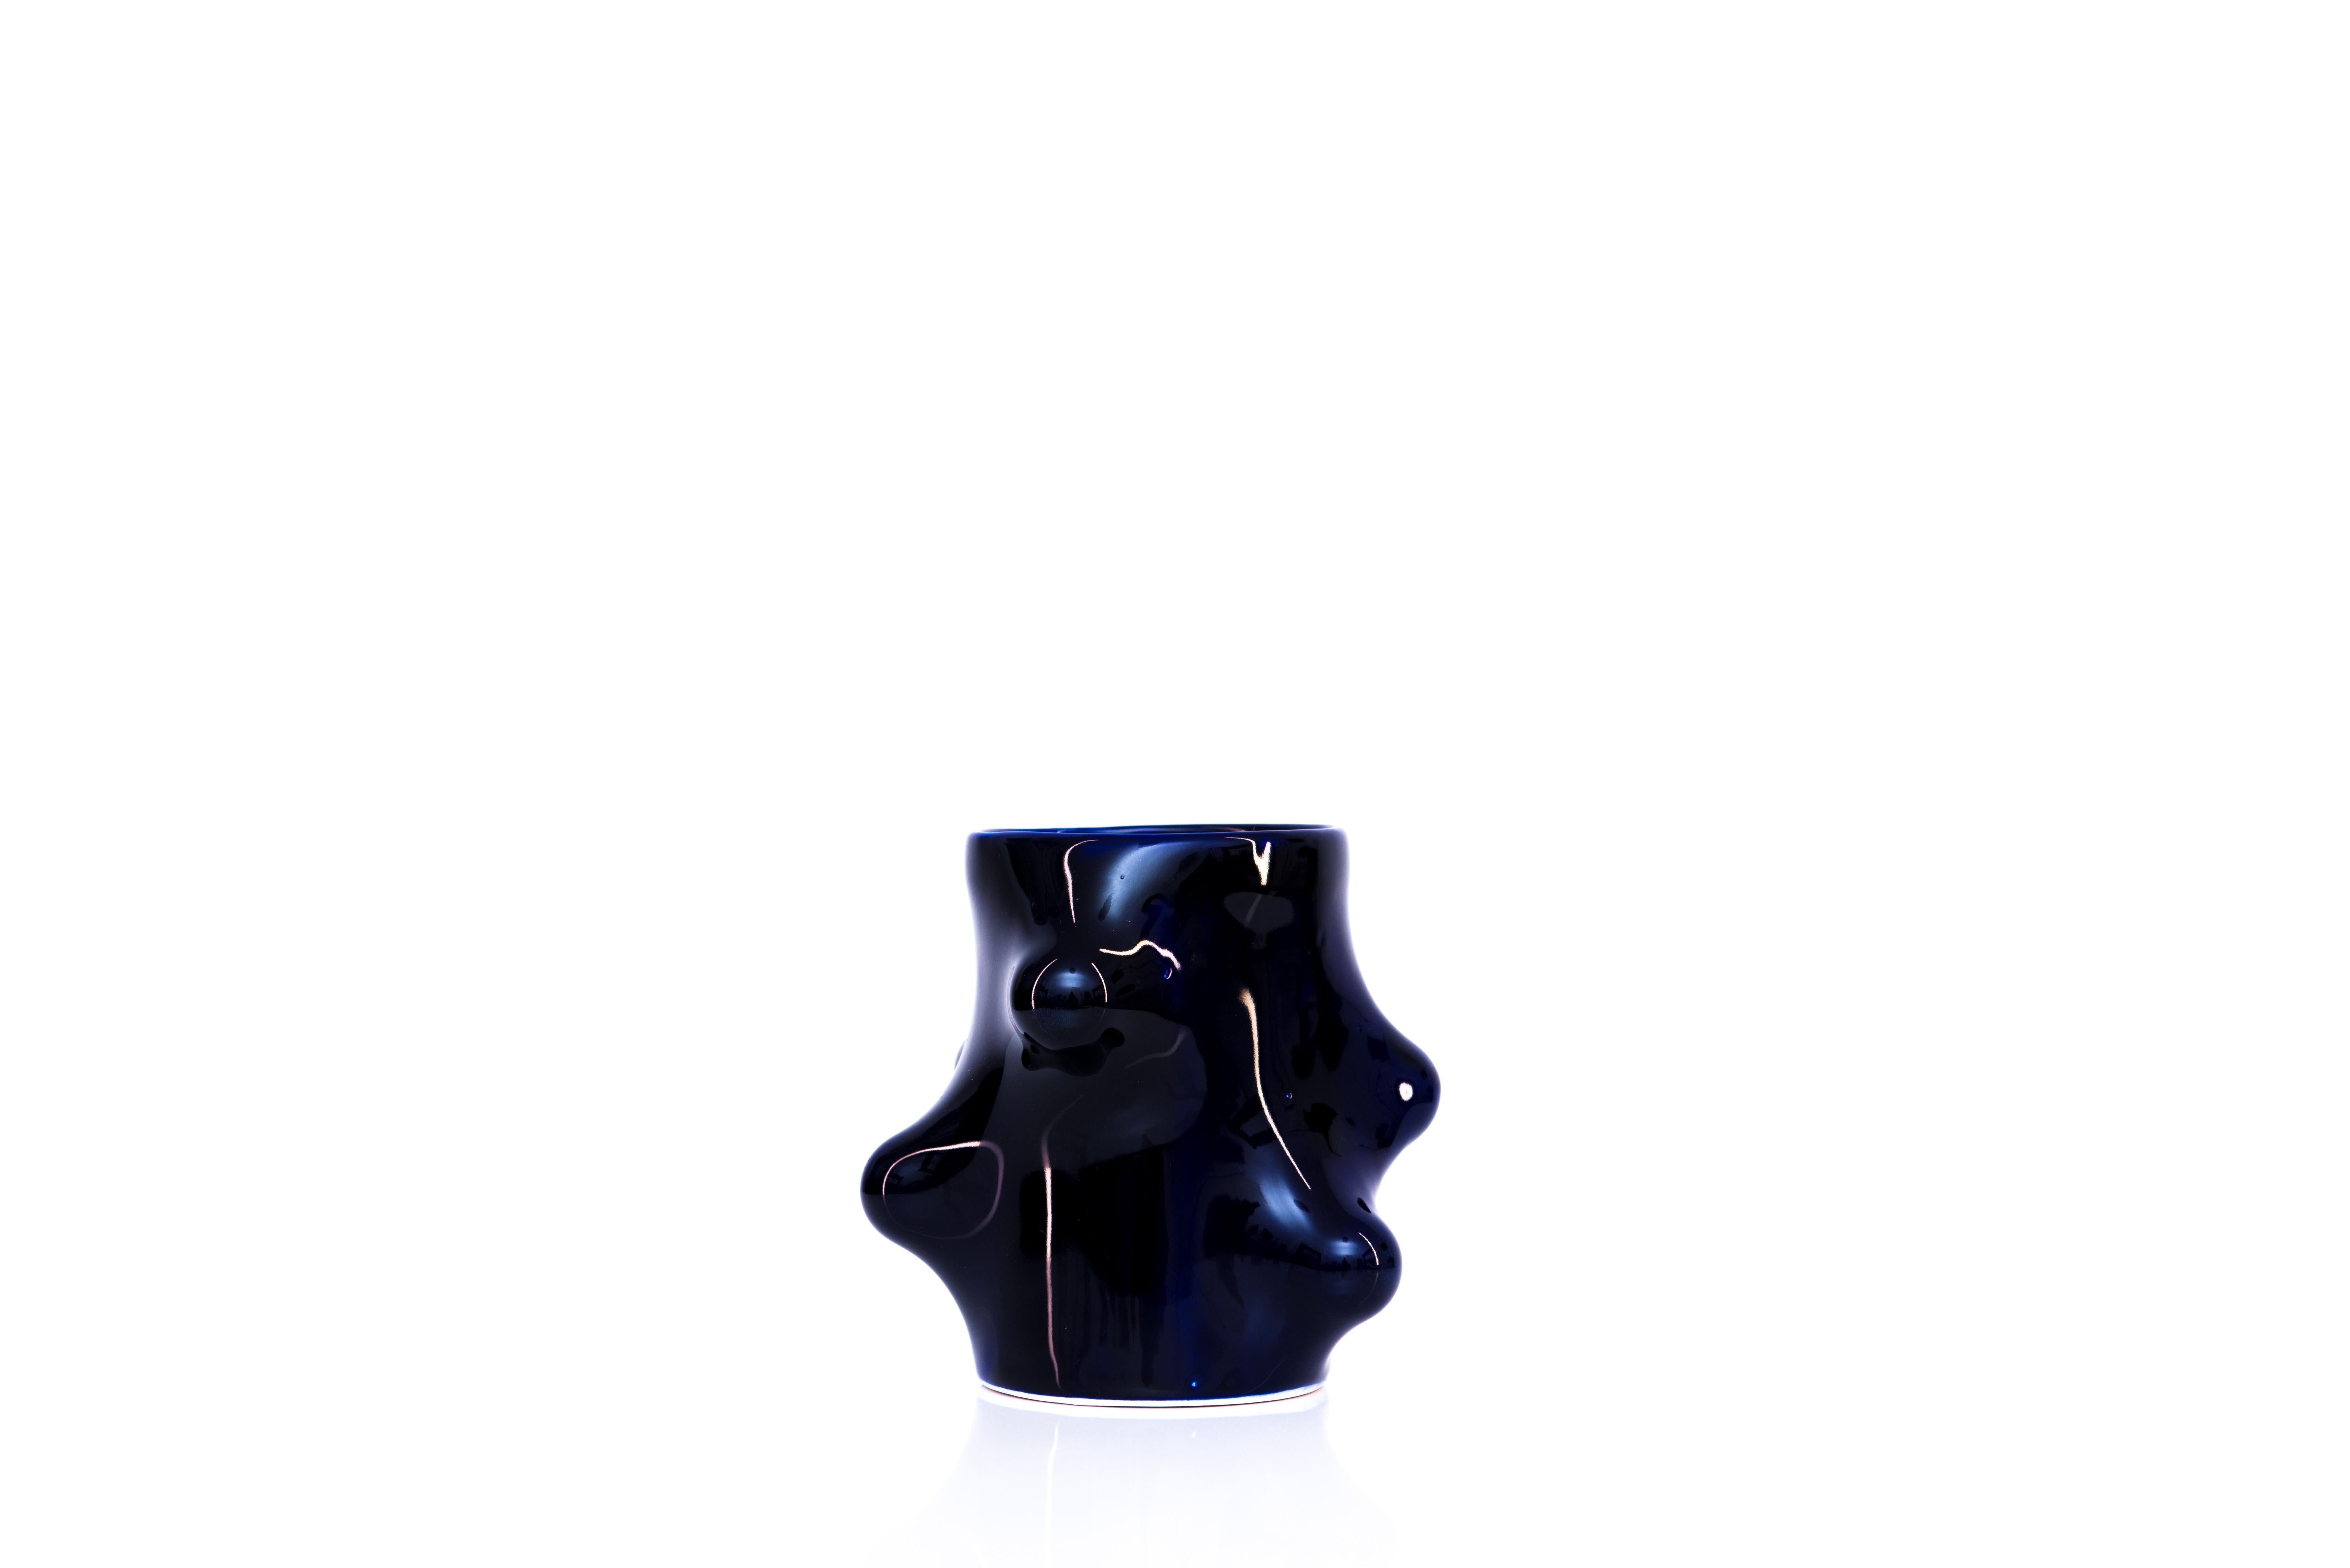 Bumps 2.0 kobaltblauer Becher von Arkadiusz Szwed
Abmessungen: L 11 x B 11 x H 12 cm
MATERIALIEN: Porzellan

Arkadiusz Szwed entwirft und produziert Keramikprodukte.
Er lebt in Warschau / Polen und arbeitet an der School of Form als Dozent und